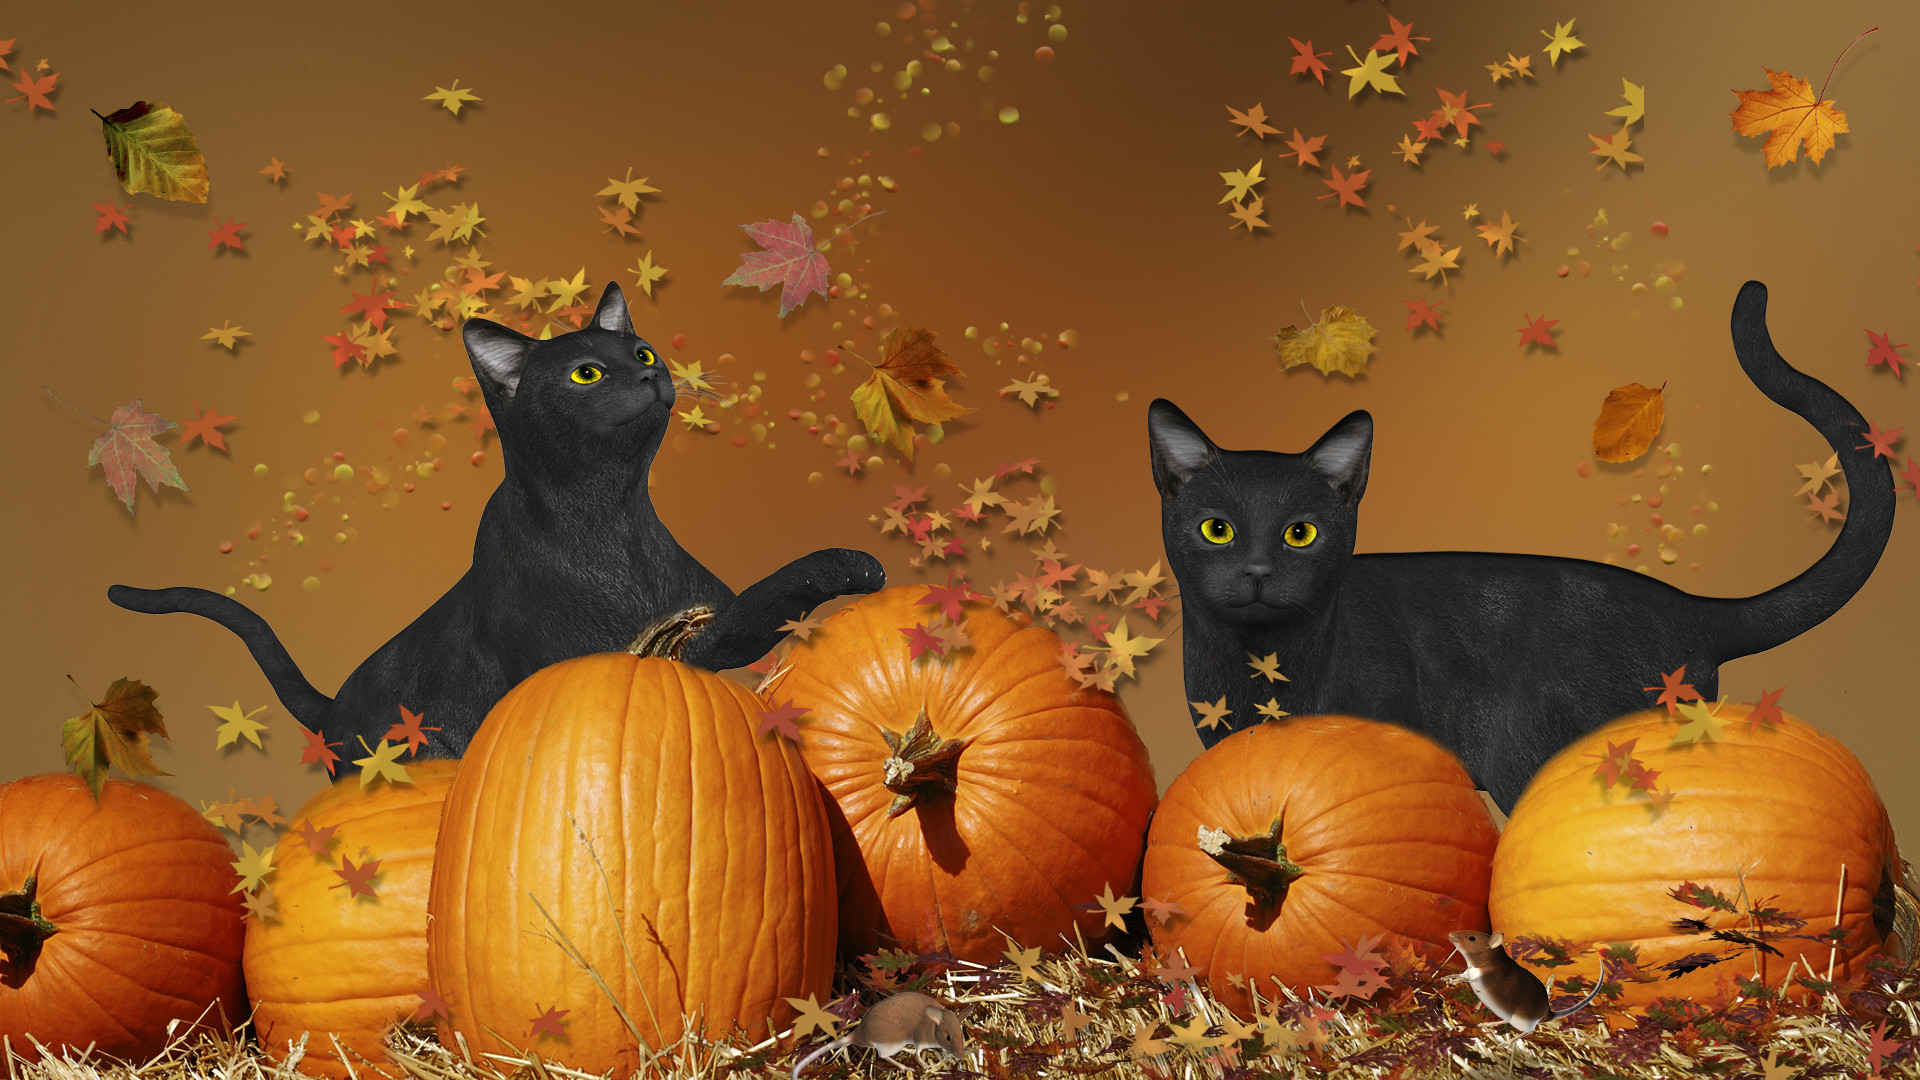 1920x1080 wallpaper hd halloween cat ; Cute-Cat-Halloween-Wallpaper-(17)